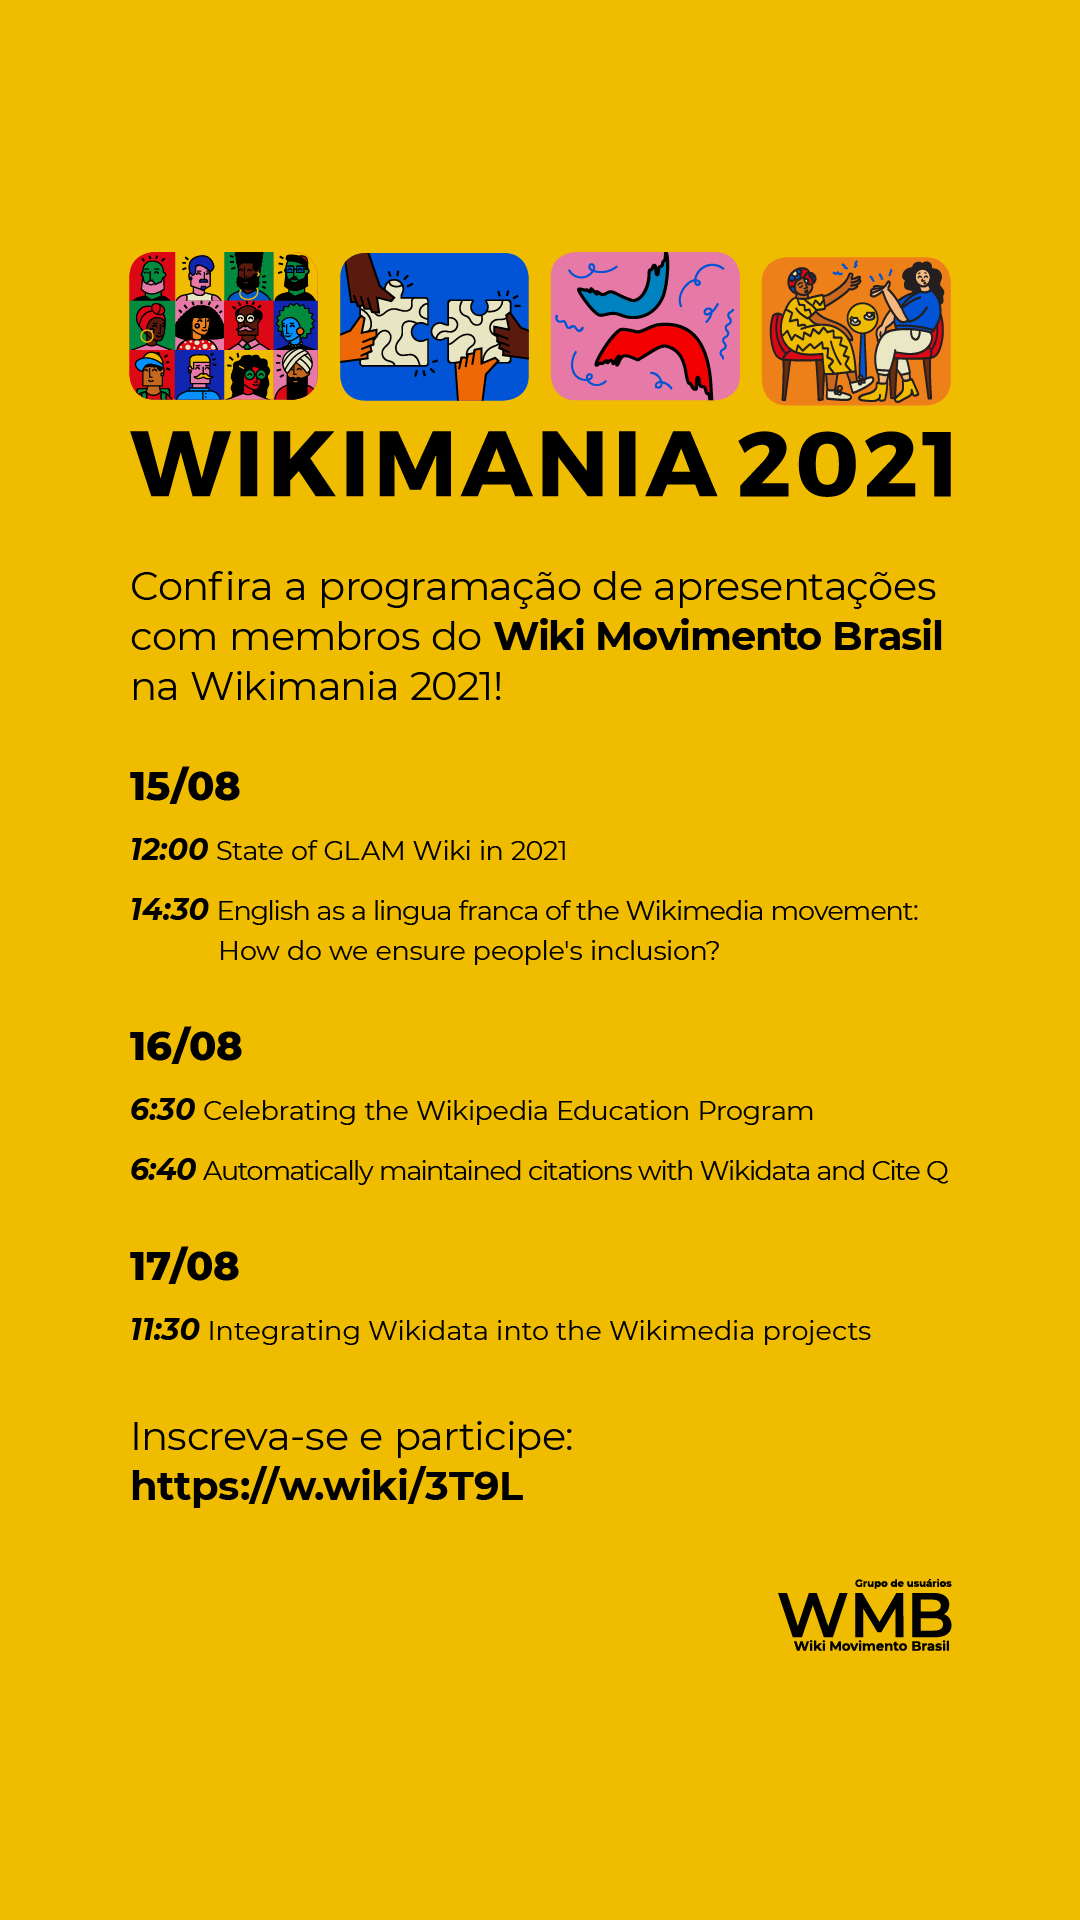 Arte de divulgação para o Wikimania 2021 - versão Post Instagram Story